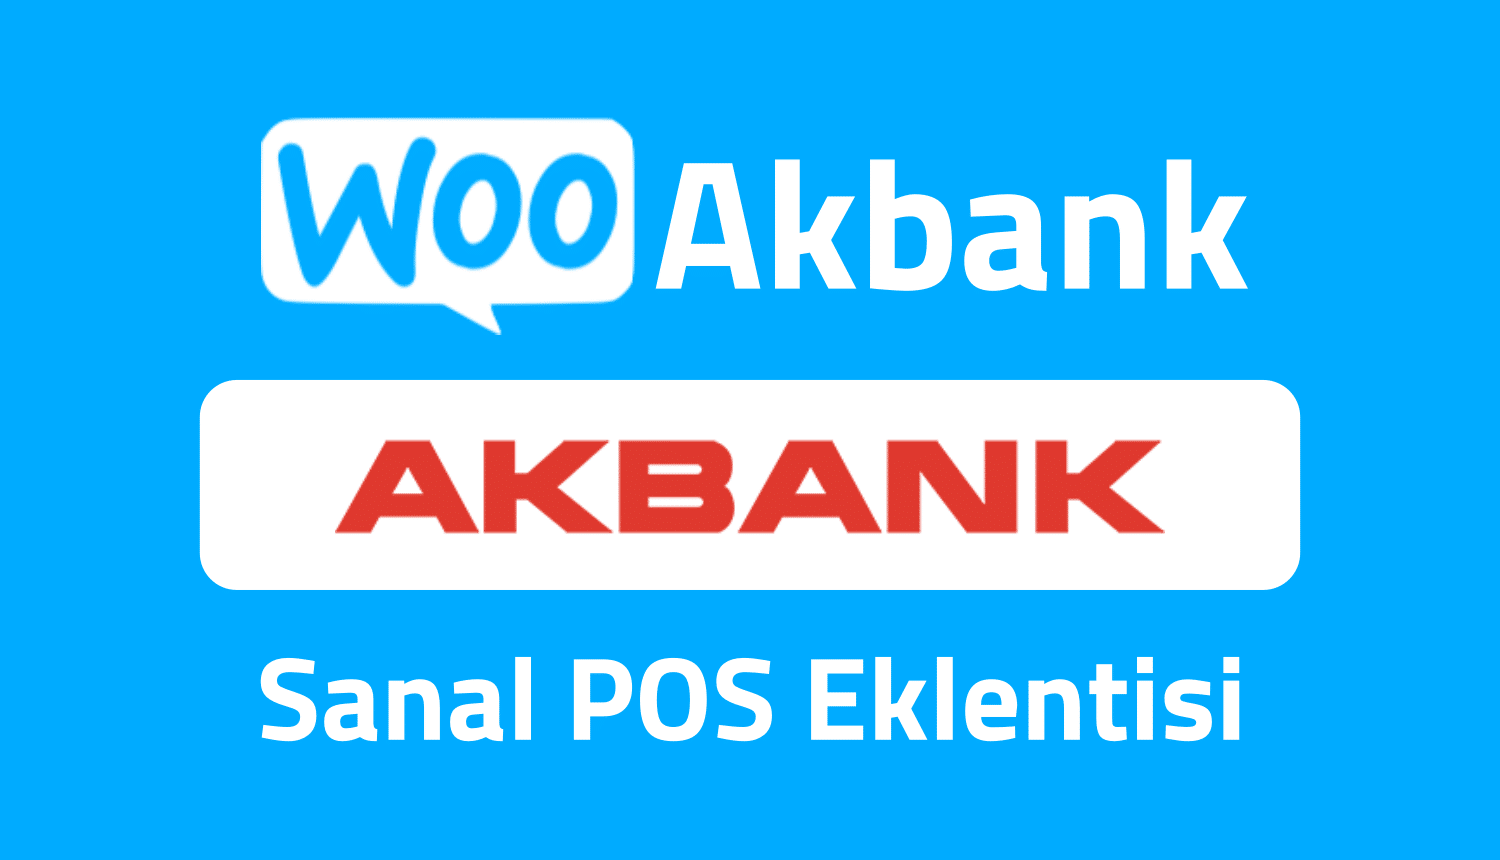 wooakbank